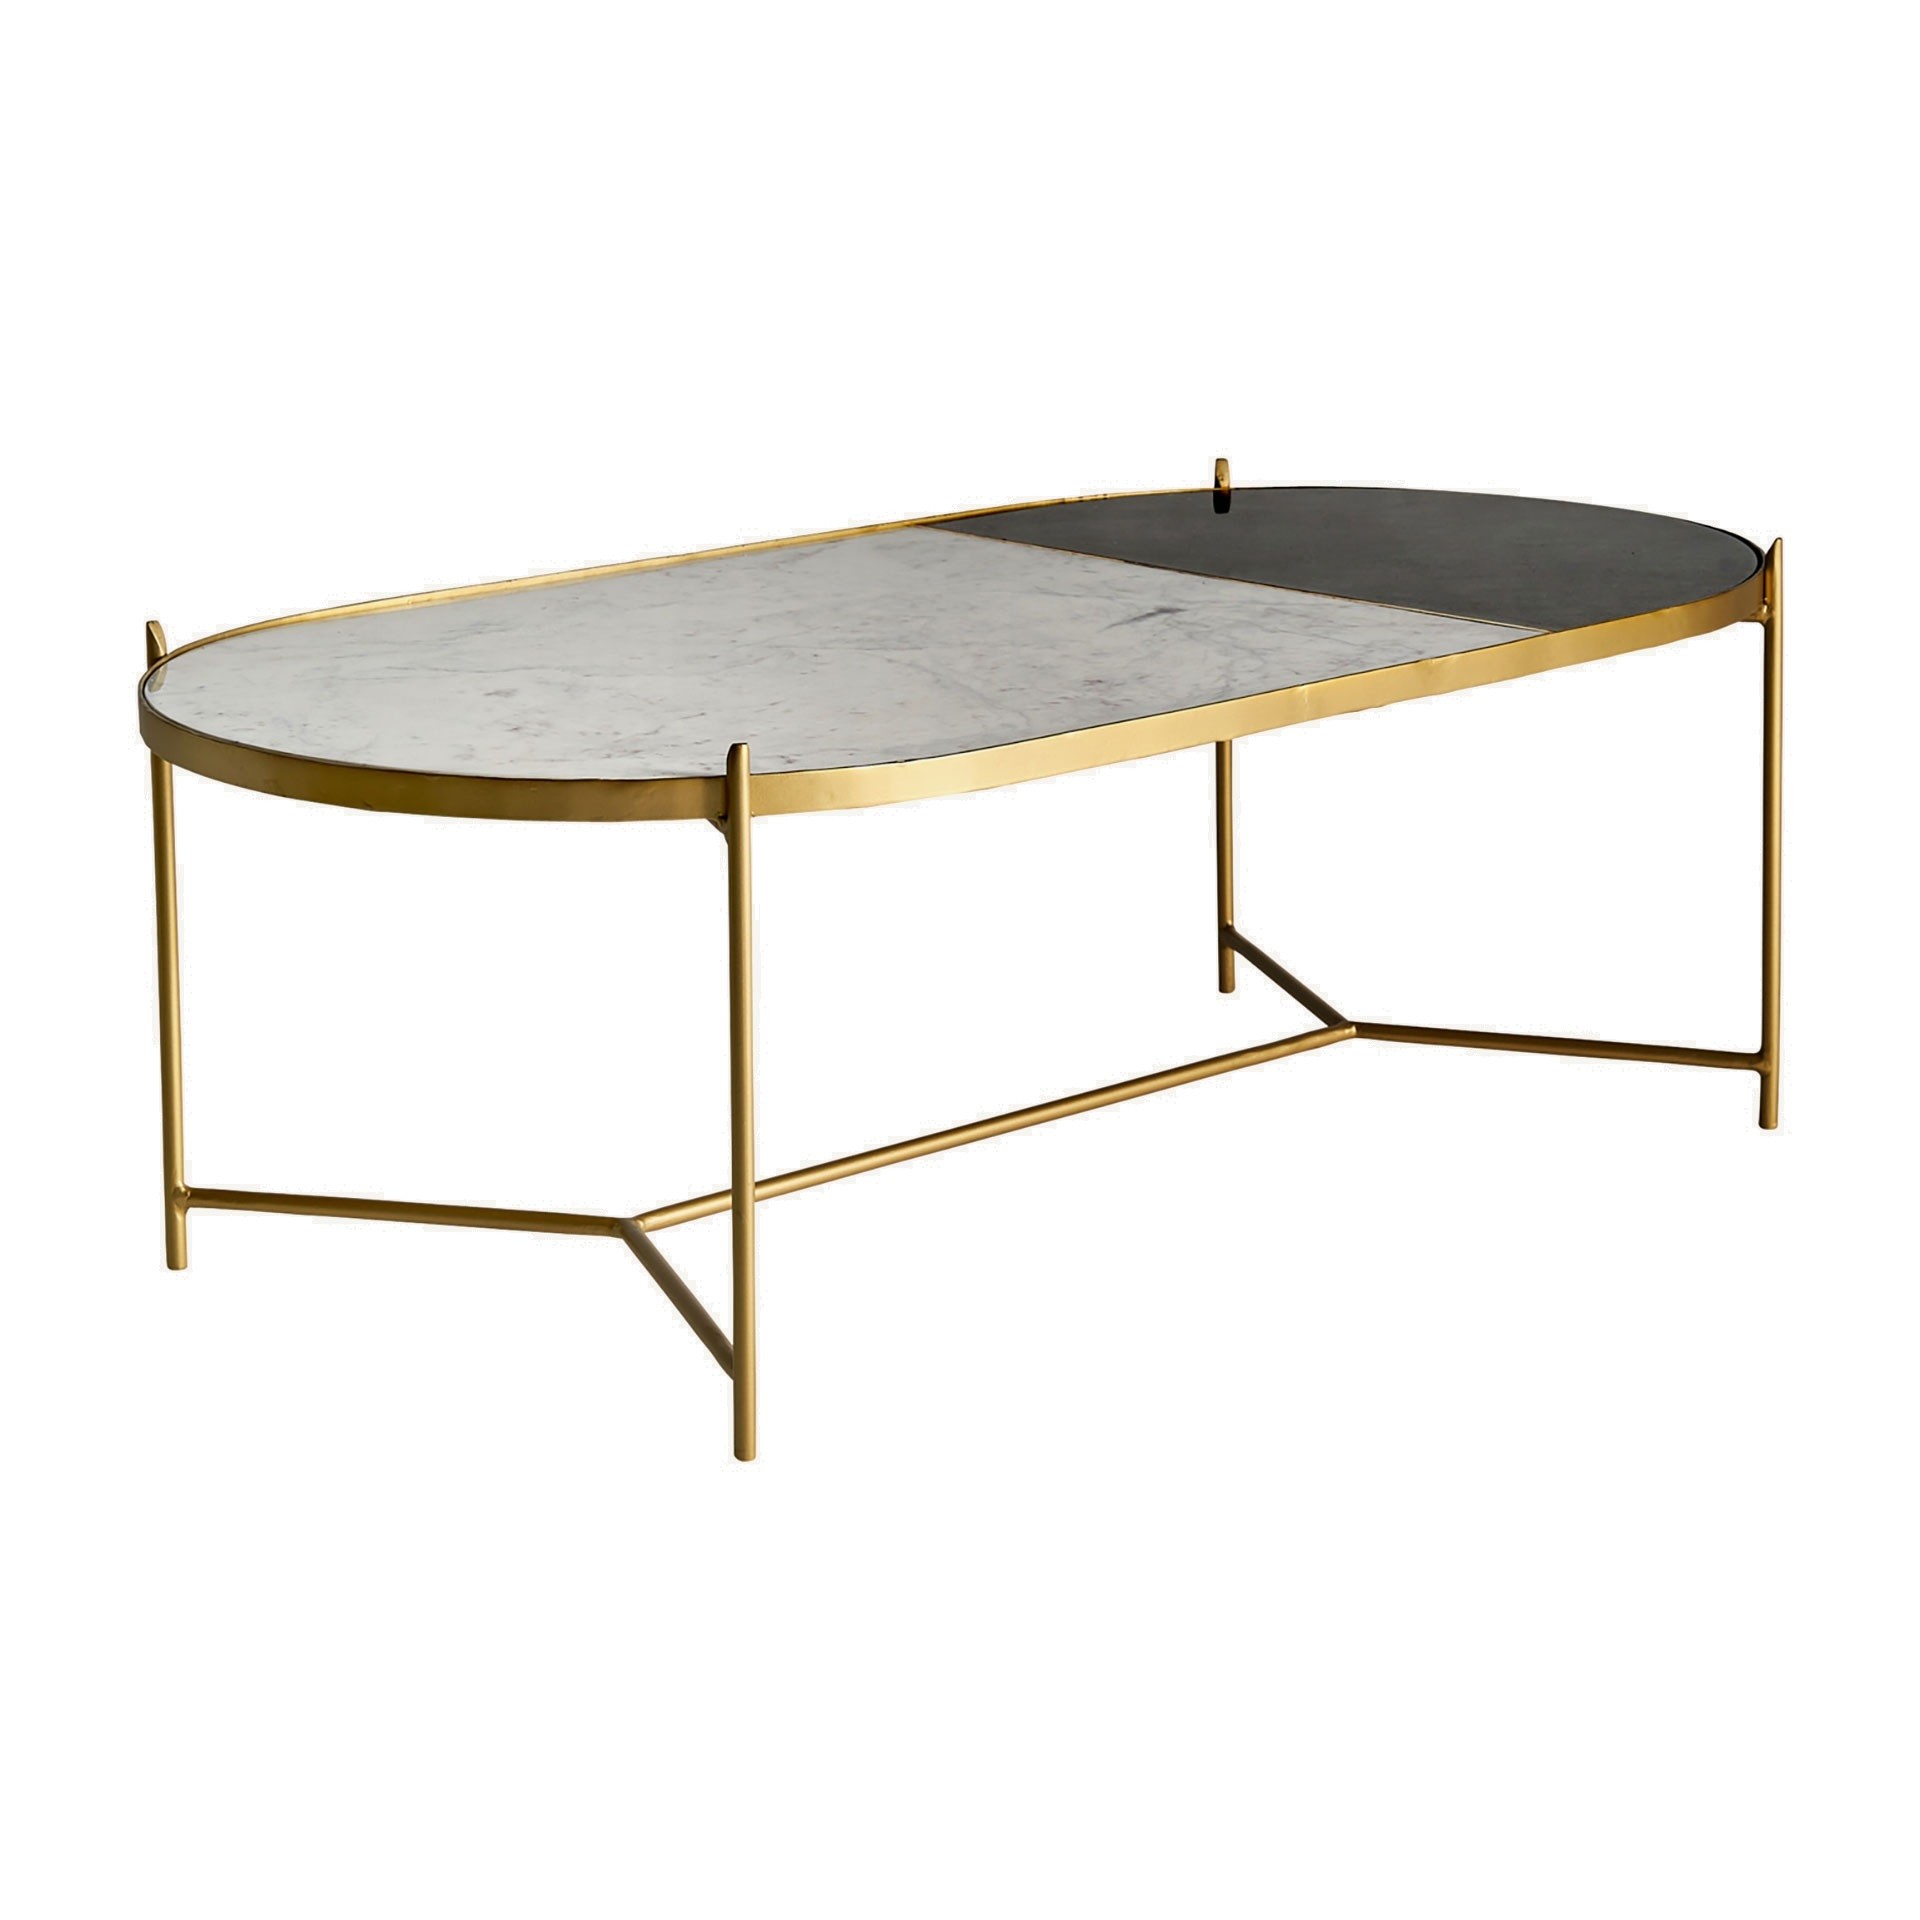 Estila Mramorový konferenční stolek Amuny ve stylu art deco se železnou podstavou ve zlaté barvě oválný černo-bílý 120cm